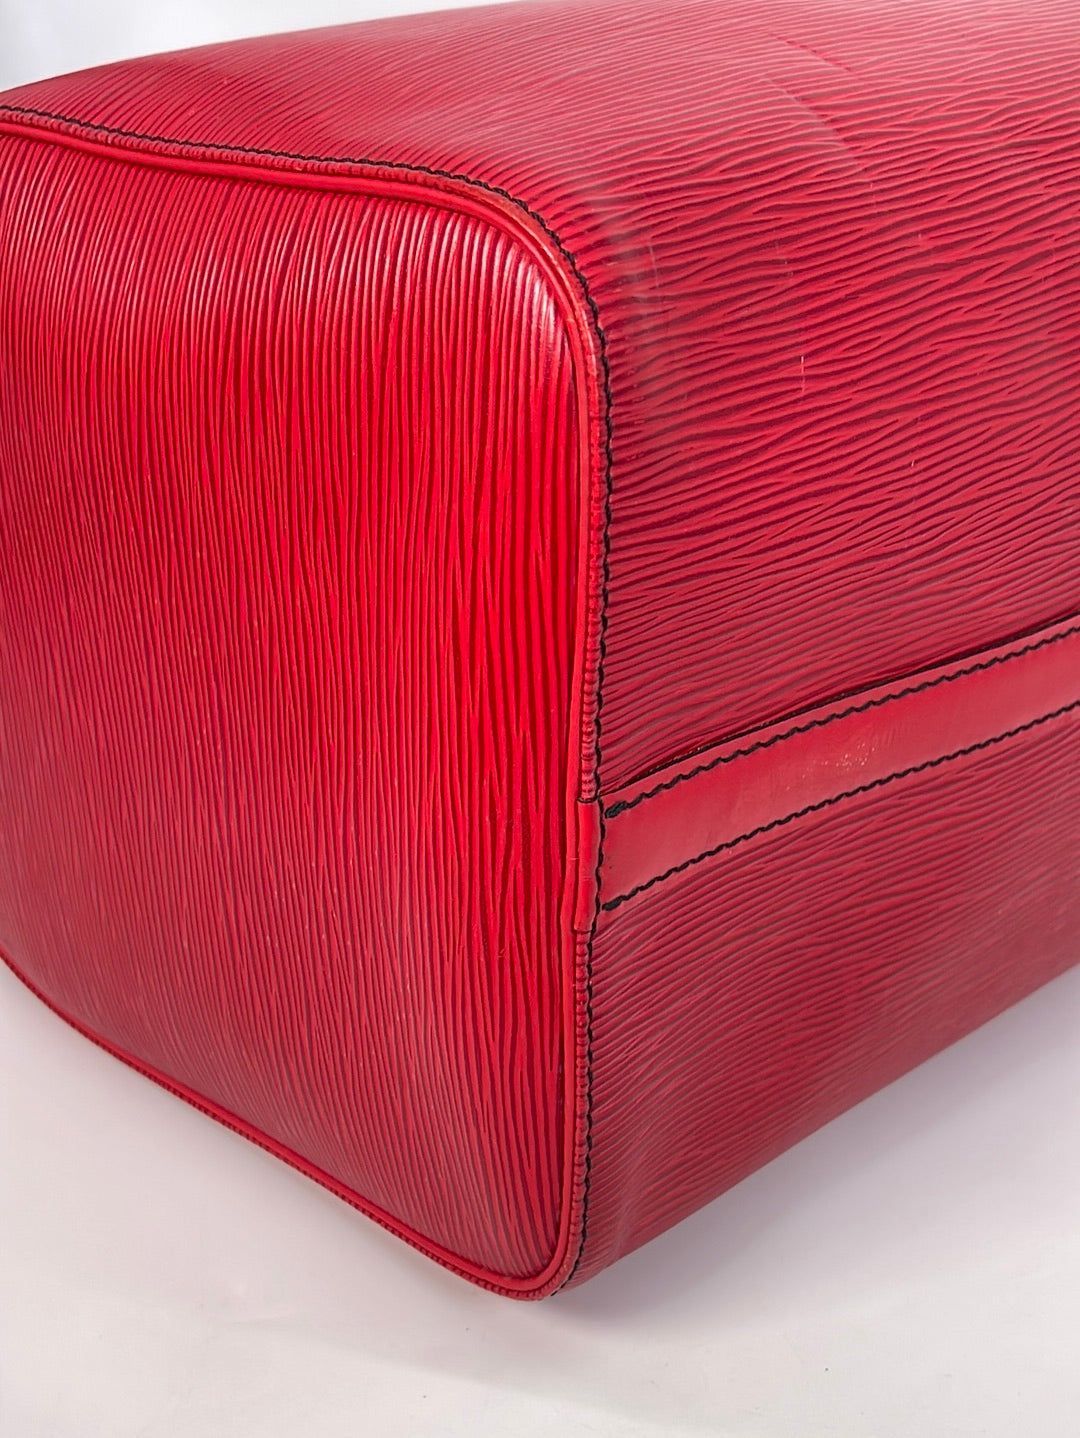 Louis Vuitton Vintage Louis Vuitton Pont Neuf Red Epi Leather Handbag